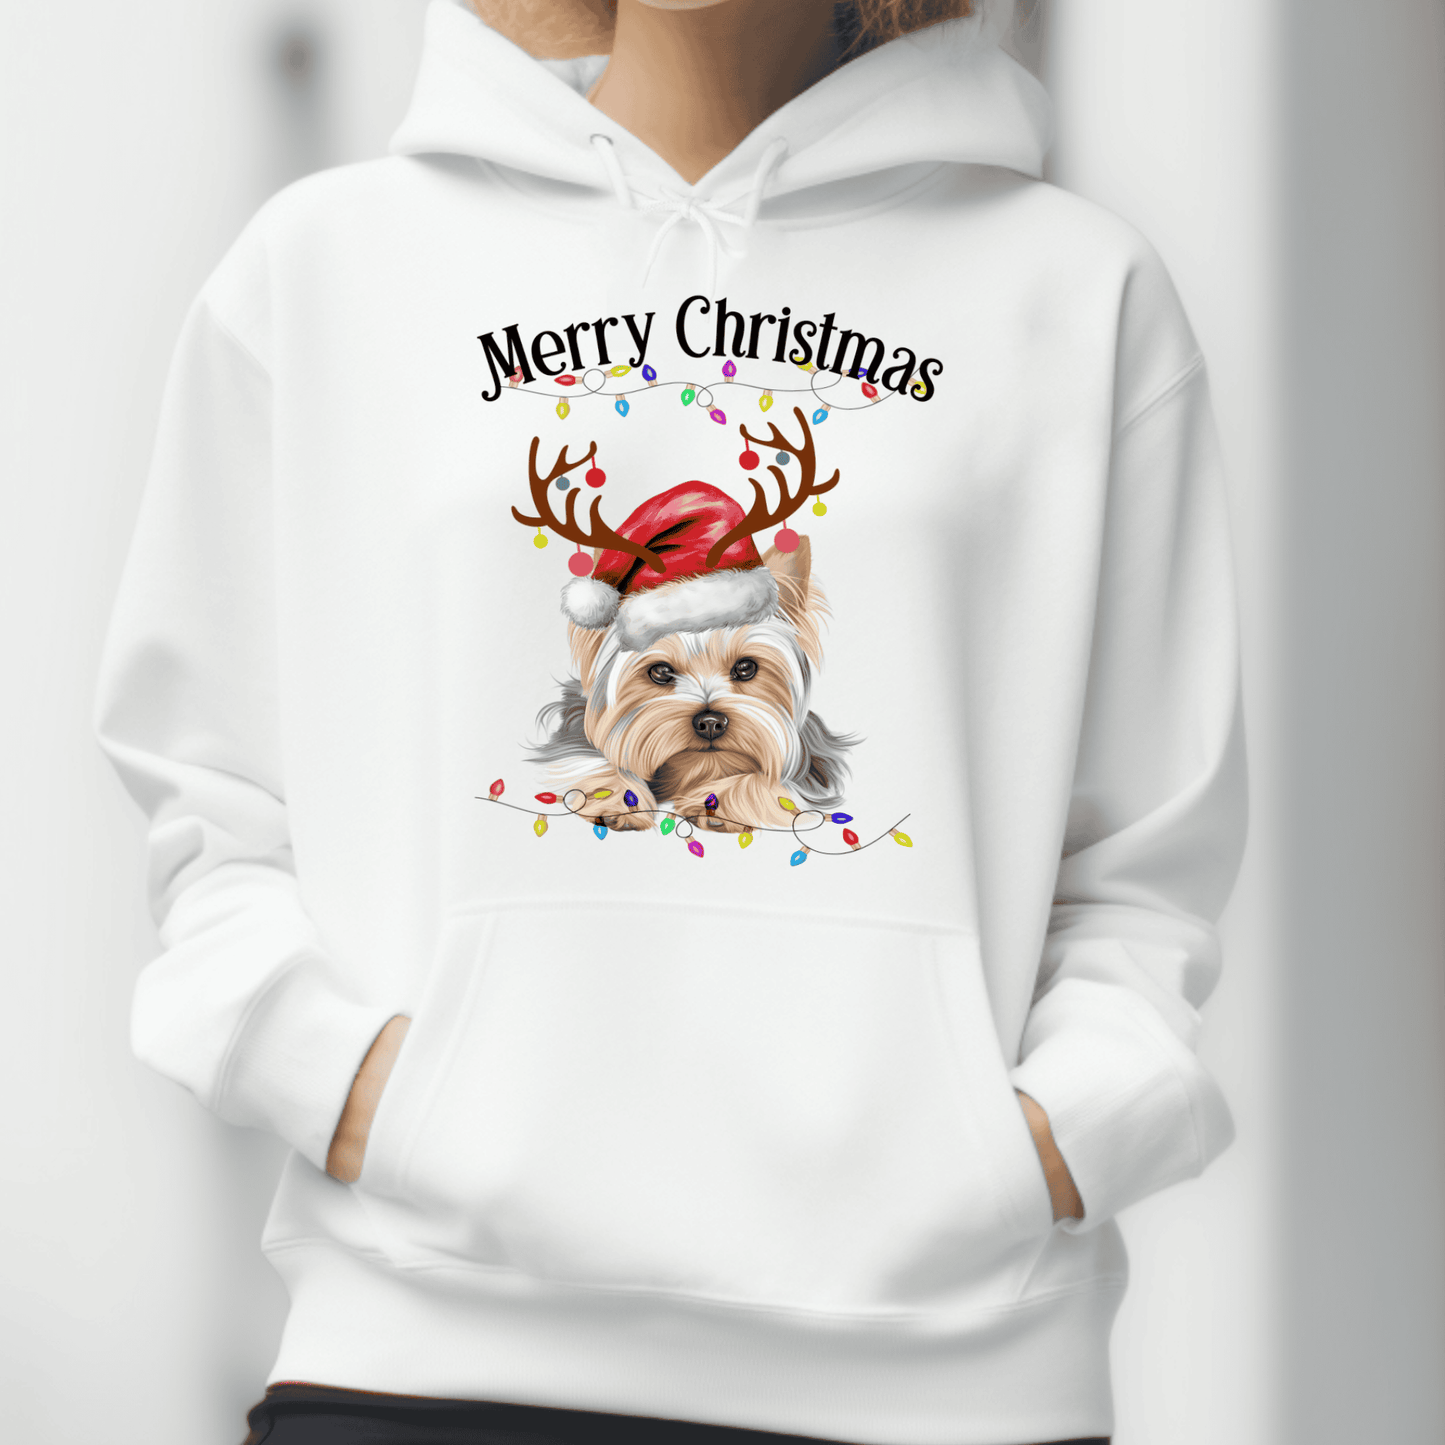 YorkShire Terrier Christmas Hoodie - Yorkie Sweatshirt ,Yorkie Lover Sweater,